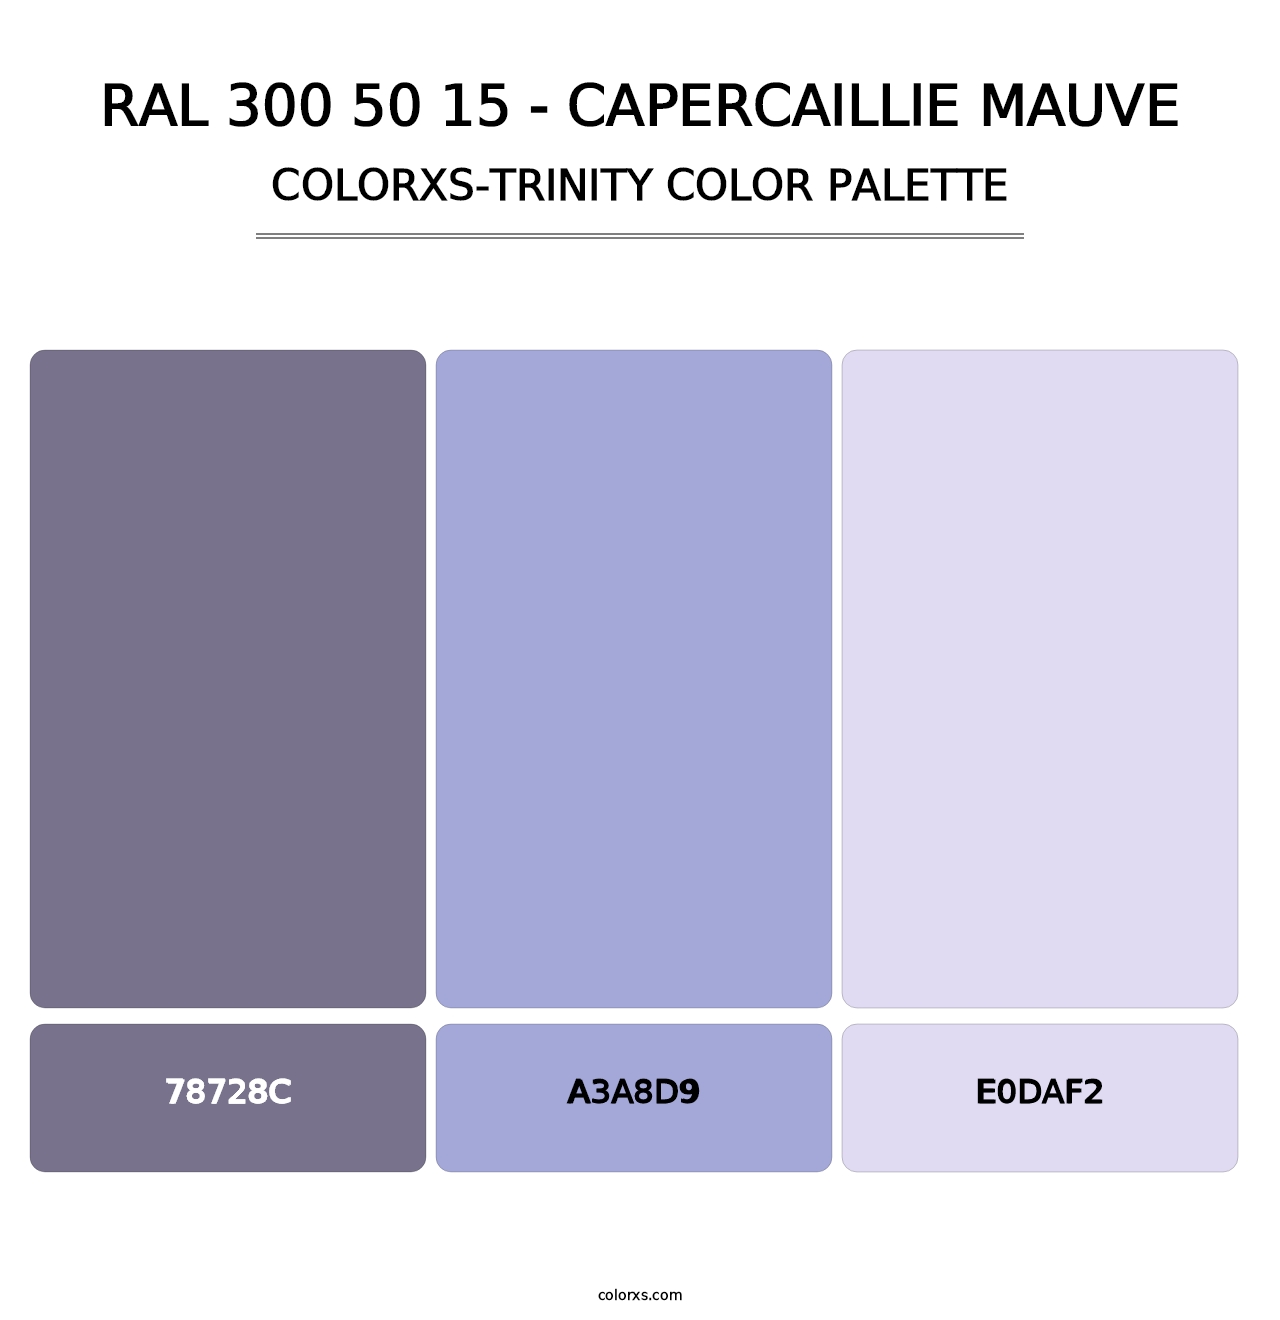 RAL 300 50 15 - Capercaillie Mauve - Colorxs Trinity Palette